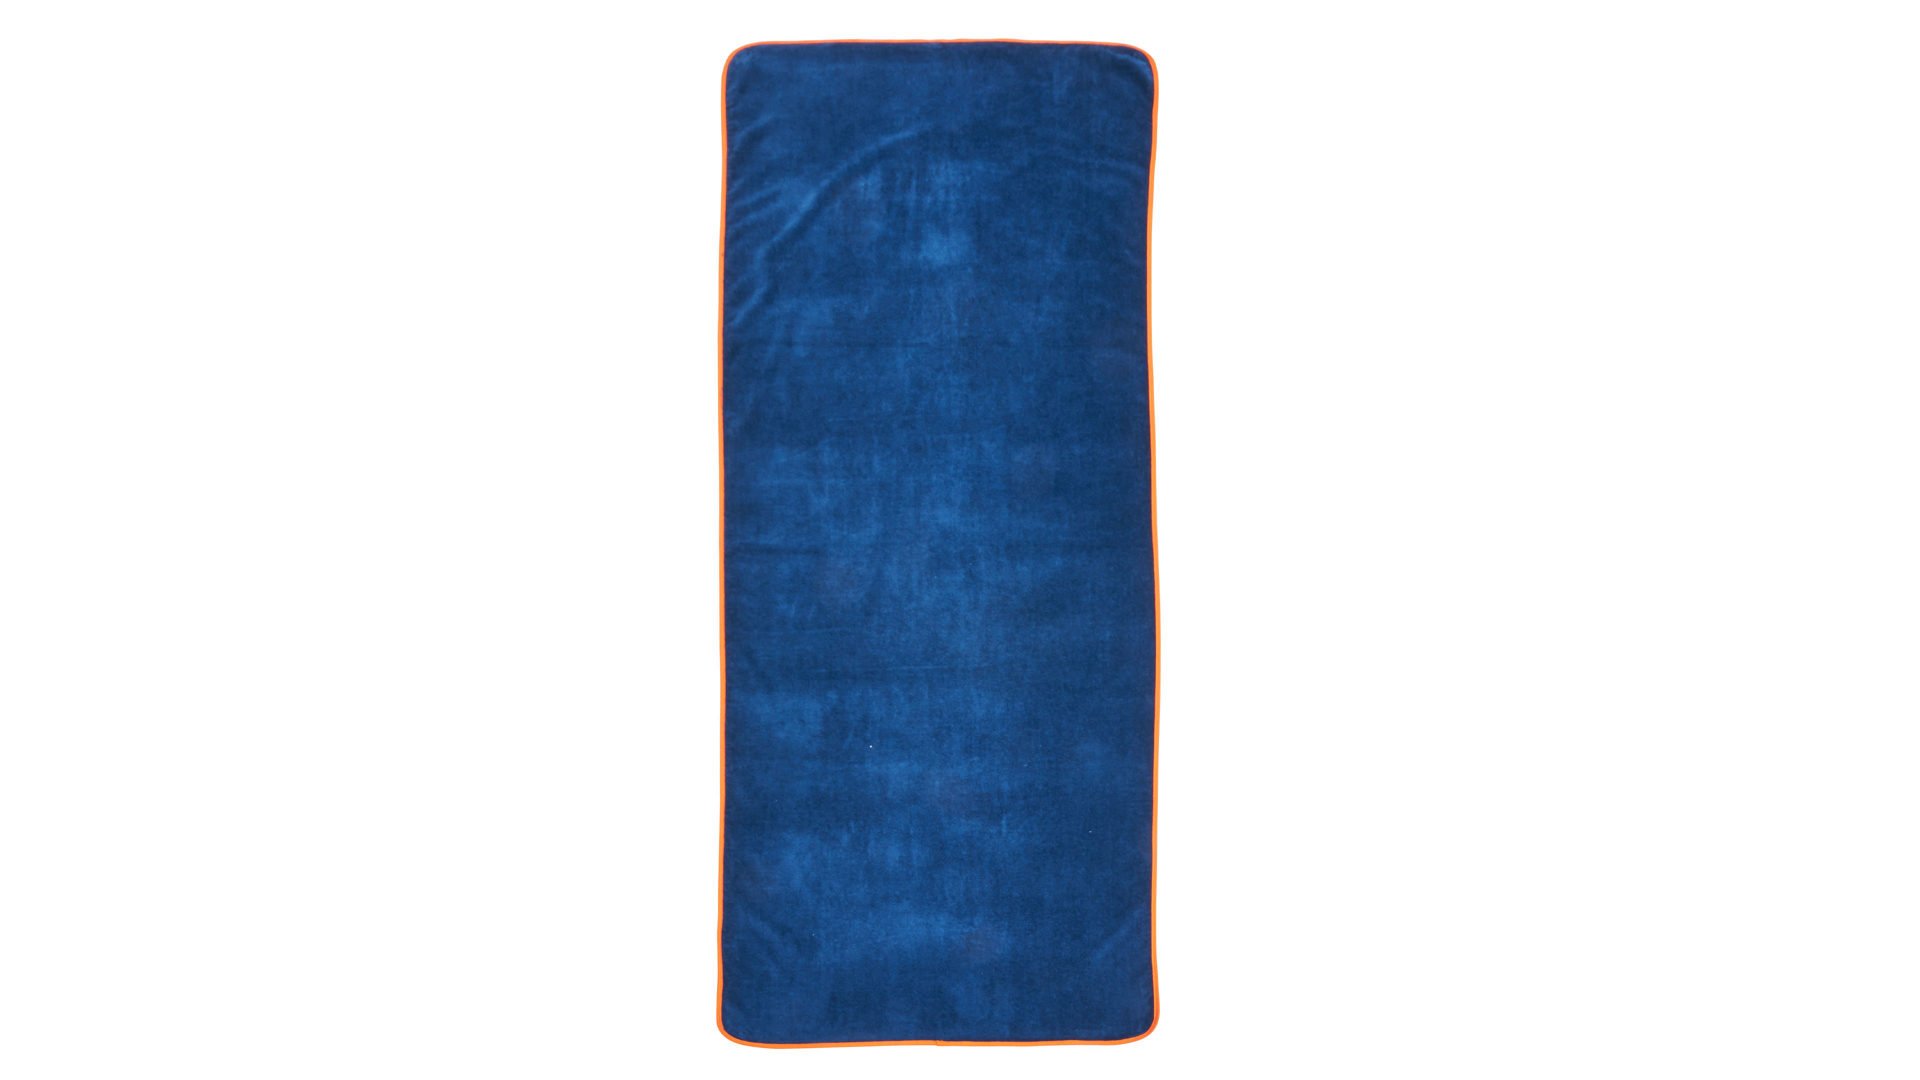 Saunahandtuch Done.® aus Stoff in Dunkelblau done.® Saunatuch marineblaue Baumwolle – ca. 80 x 200 cm